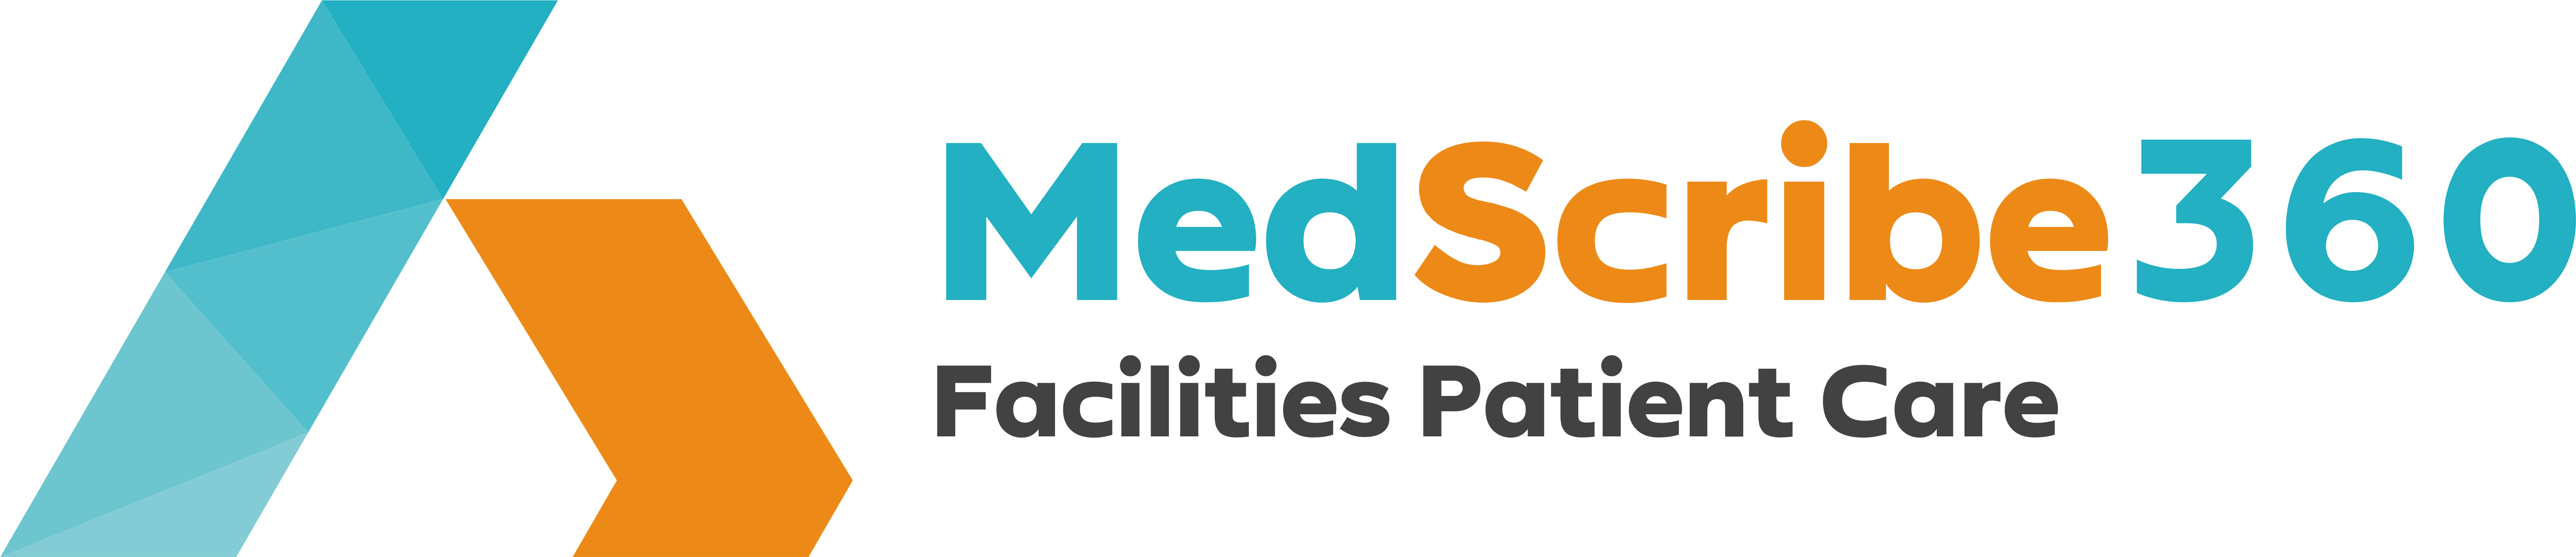 medscribe360-logo